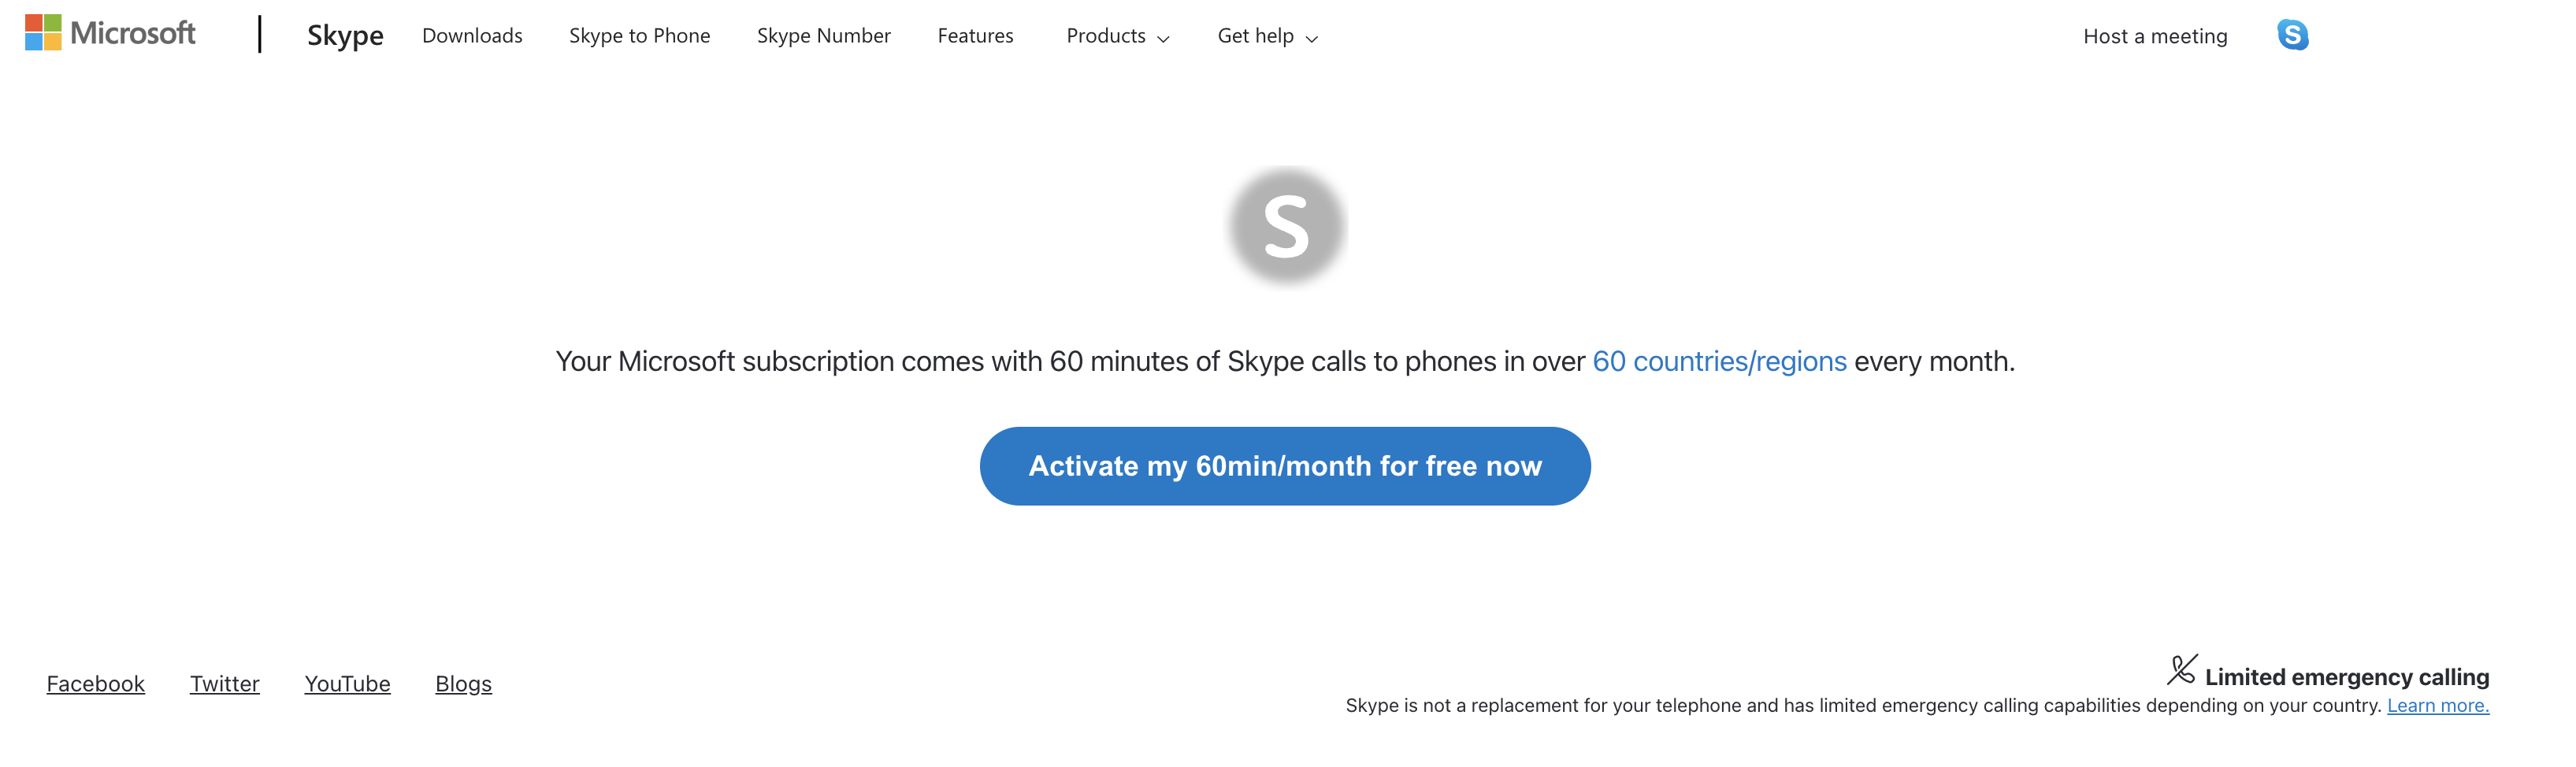 Strona sieci Web umożliwiająca aktywowanie programu Skype w ciągu 60 minut